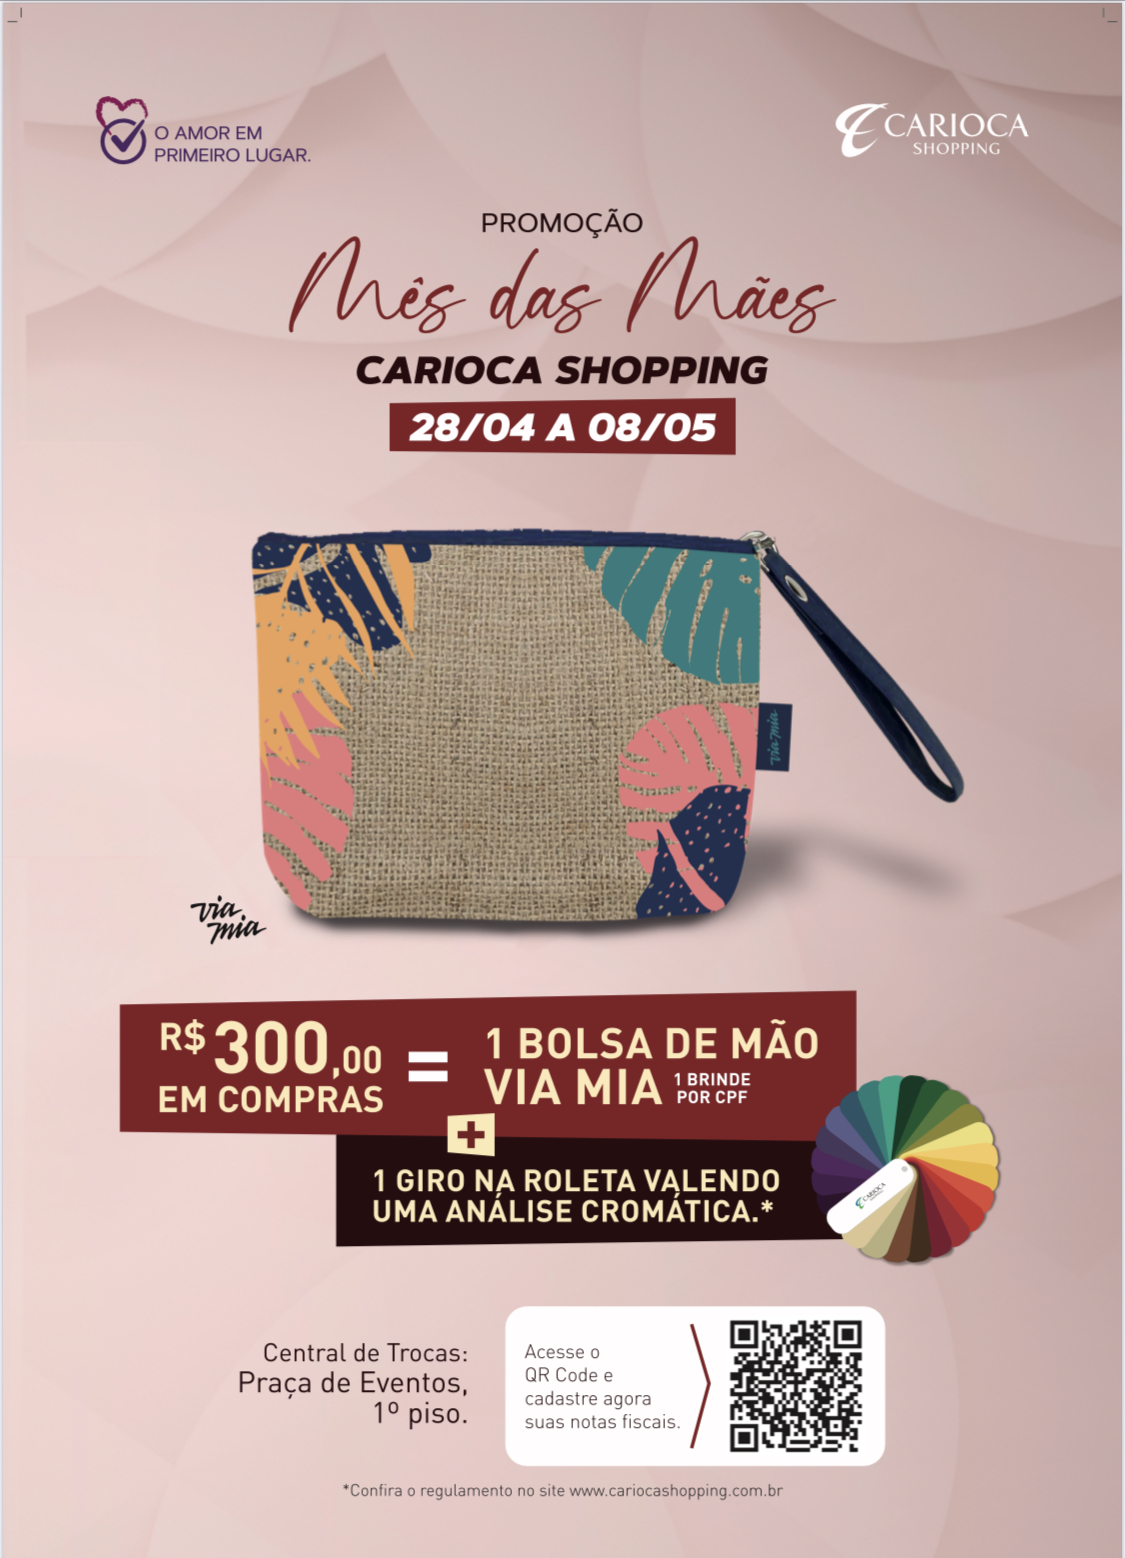 Carioca Shopping lança promoção para o Dia das Mães